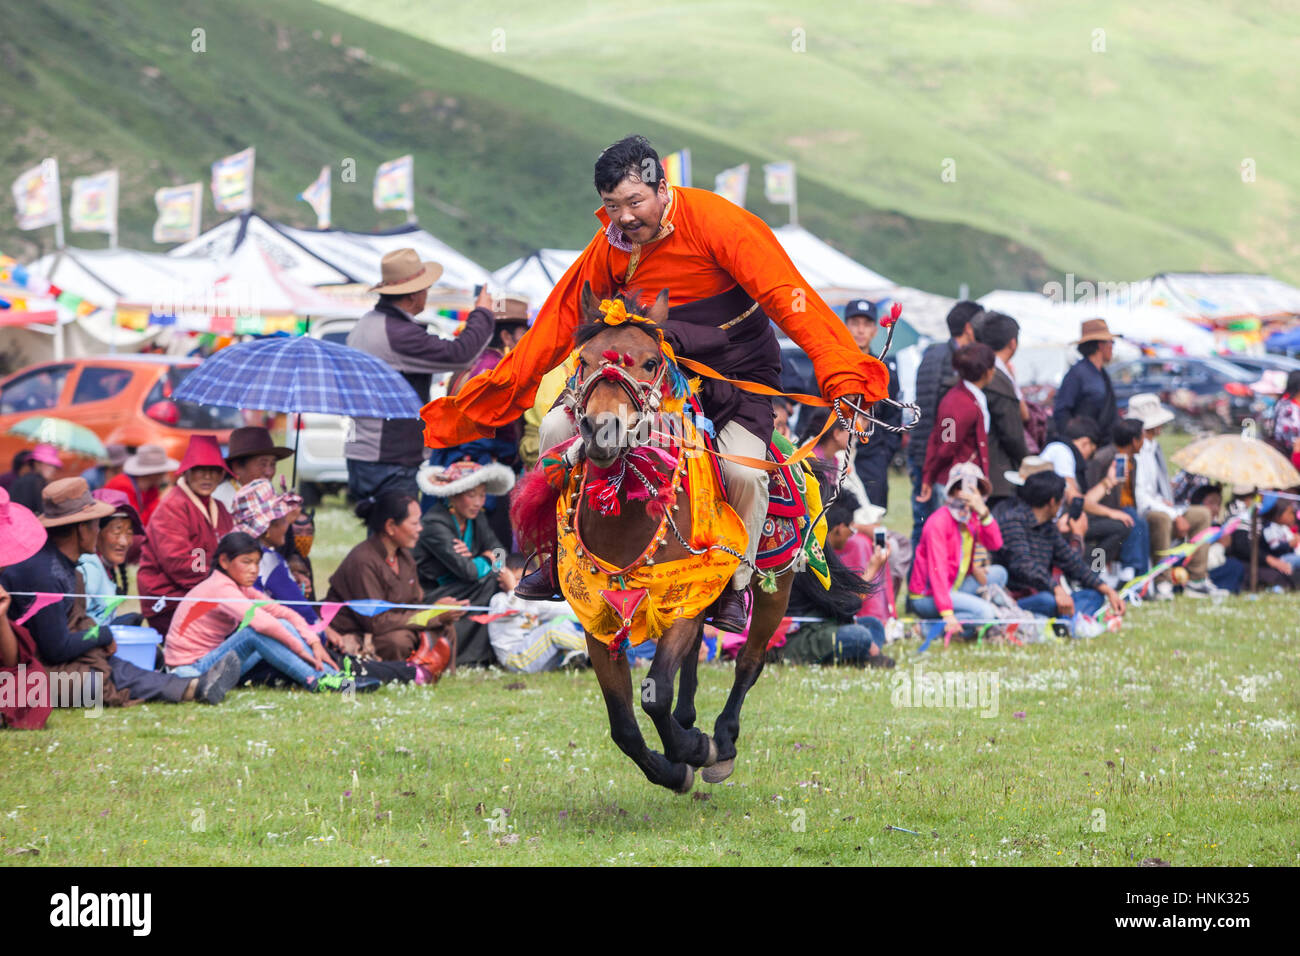 Khampa Mann Reiten während dem Manigango Pferdefest in der tibetischen Hochebene in Sichuan, China. Stockfoto